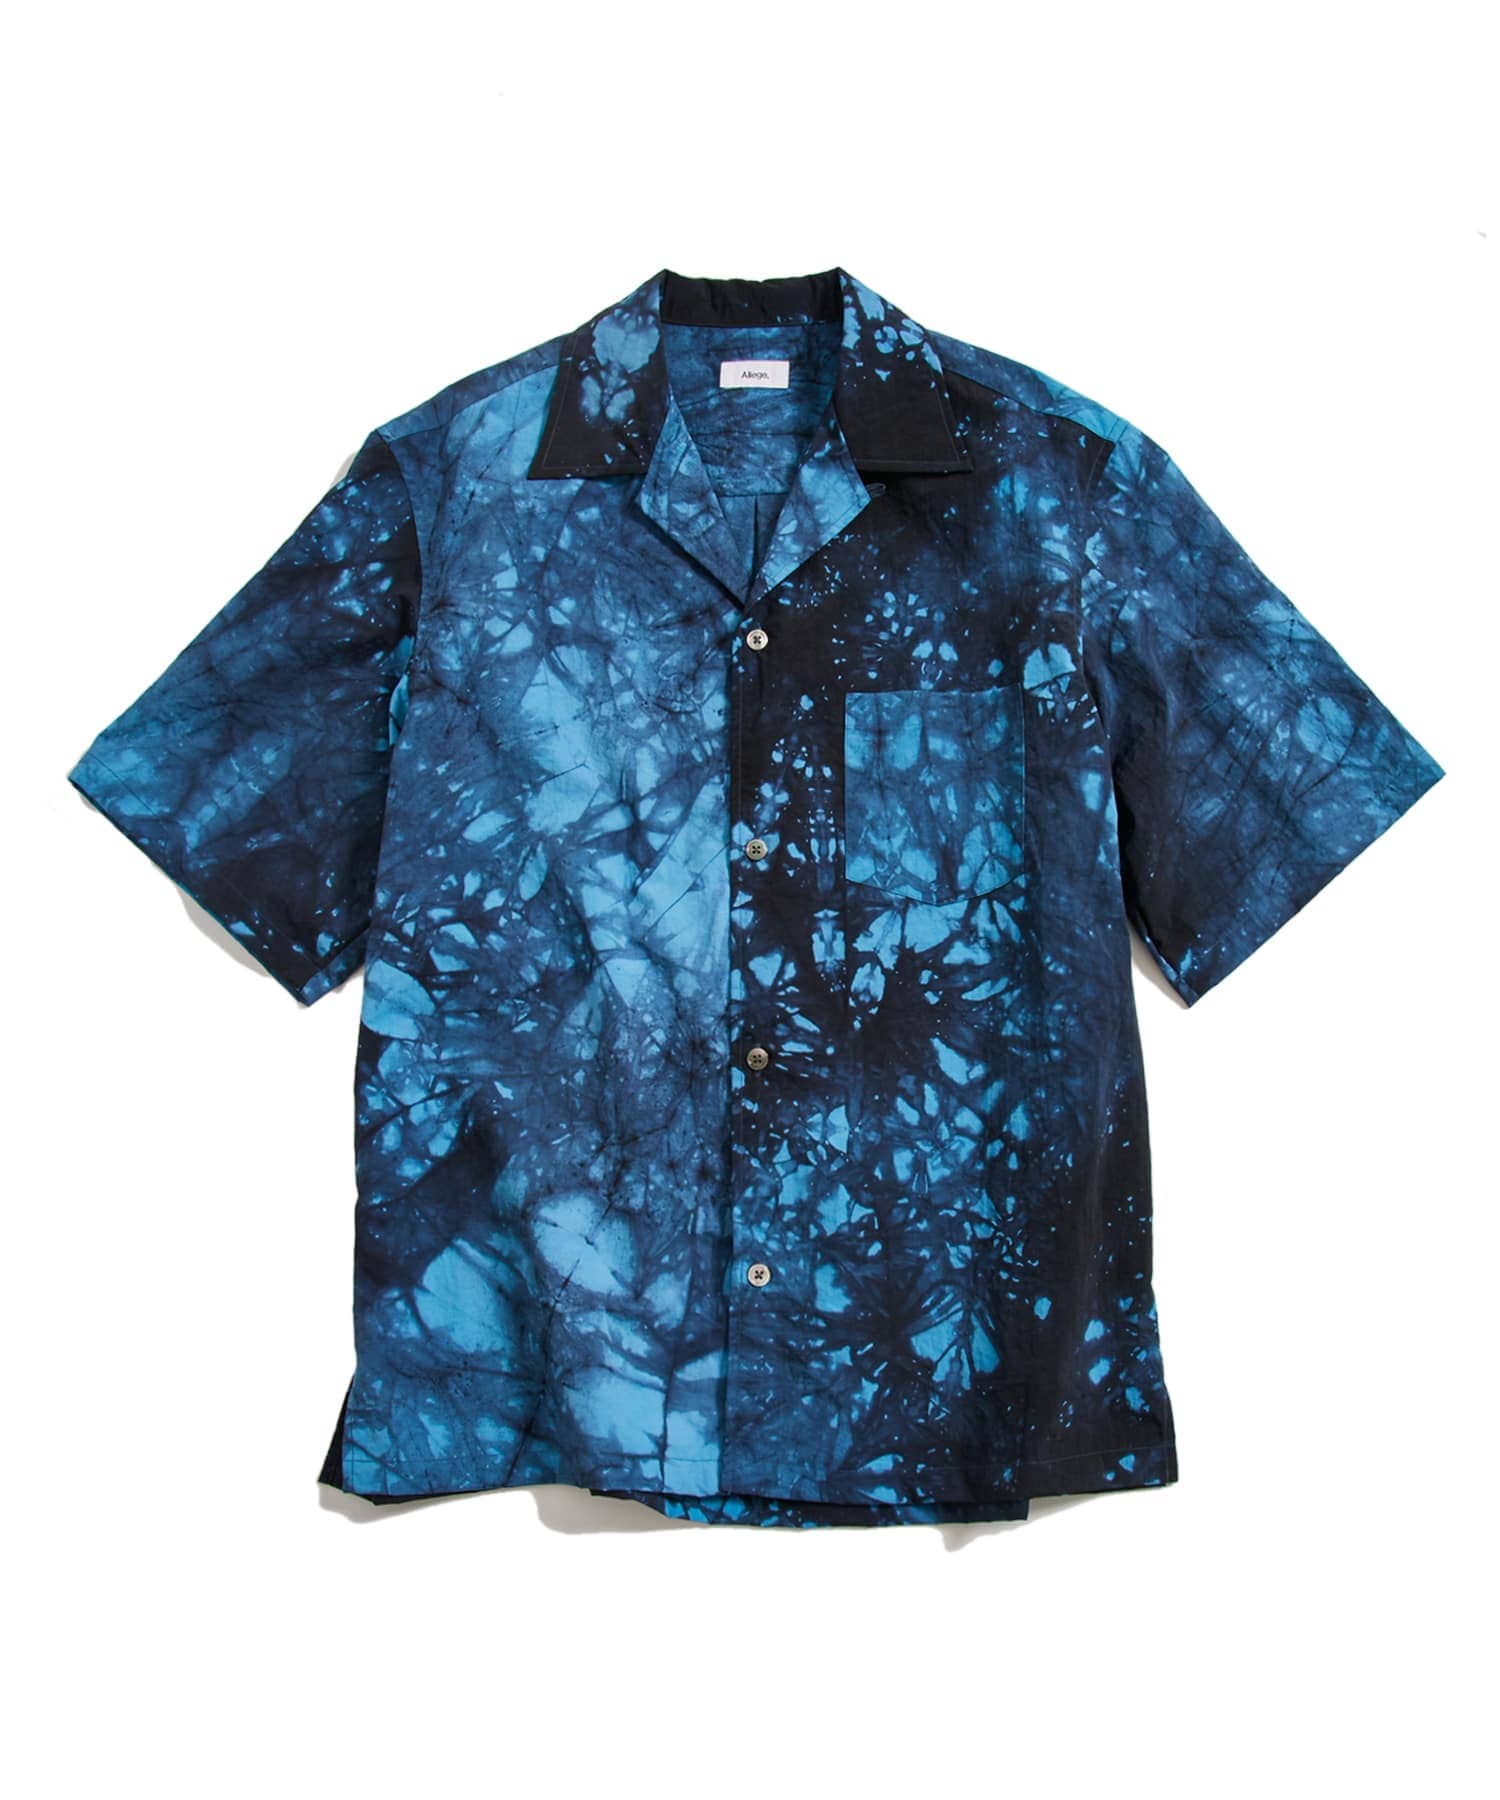 Kago Dyed Open Callor S/S Shirt